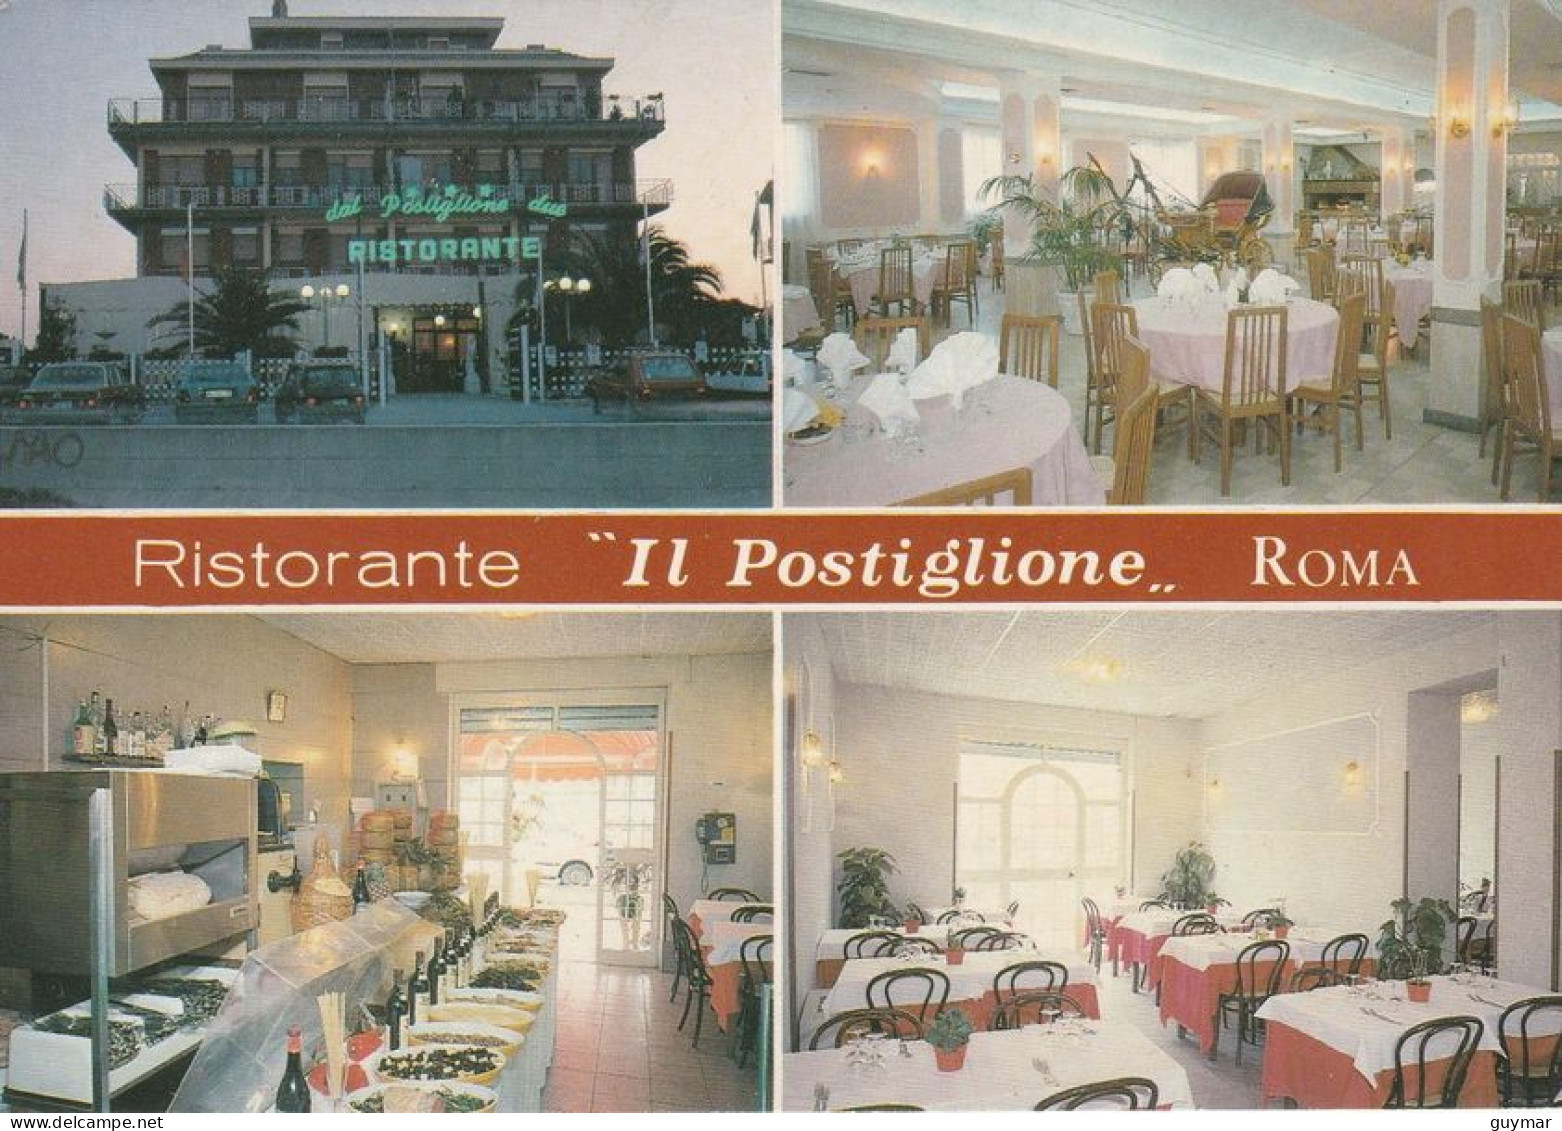 ROMA - RISTORANTE - IL POSTIGLIONE - 5566 - Wirtschaften, Hotels & Restaurants